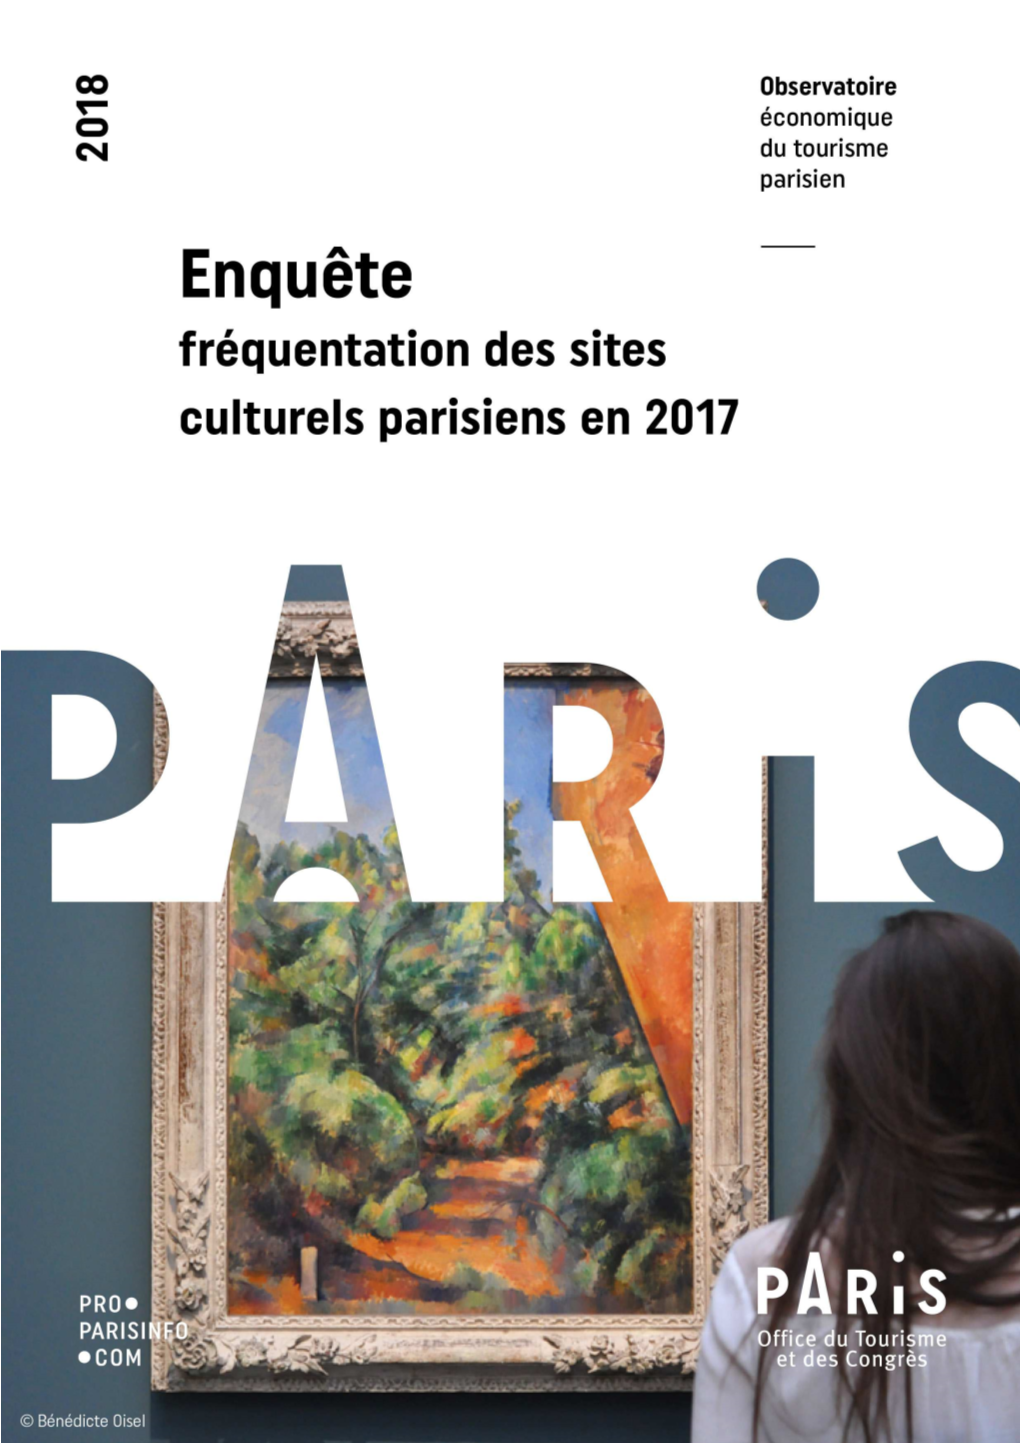 Enquête De Fréquentation Des Sites Culturels En 2017